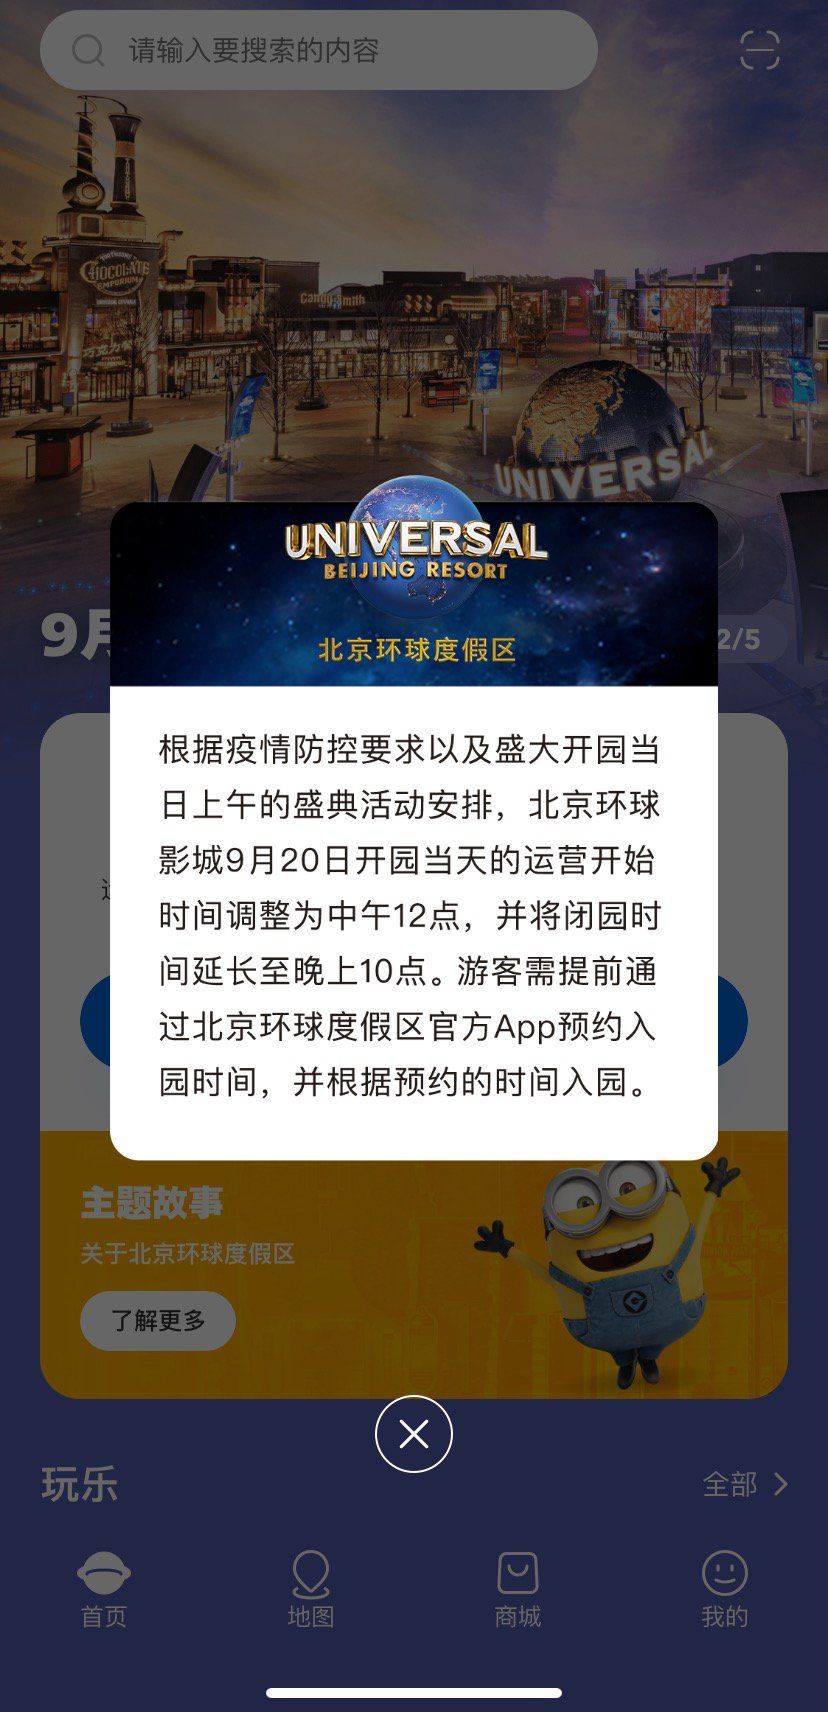 9月20日北京环球影城几点可以入园?